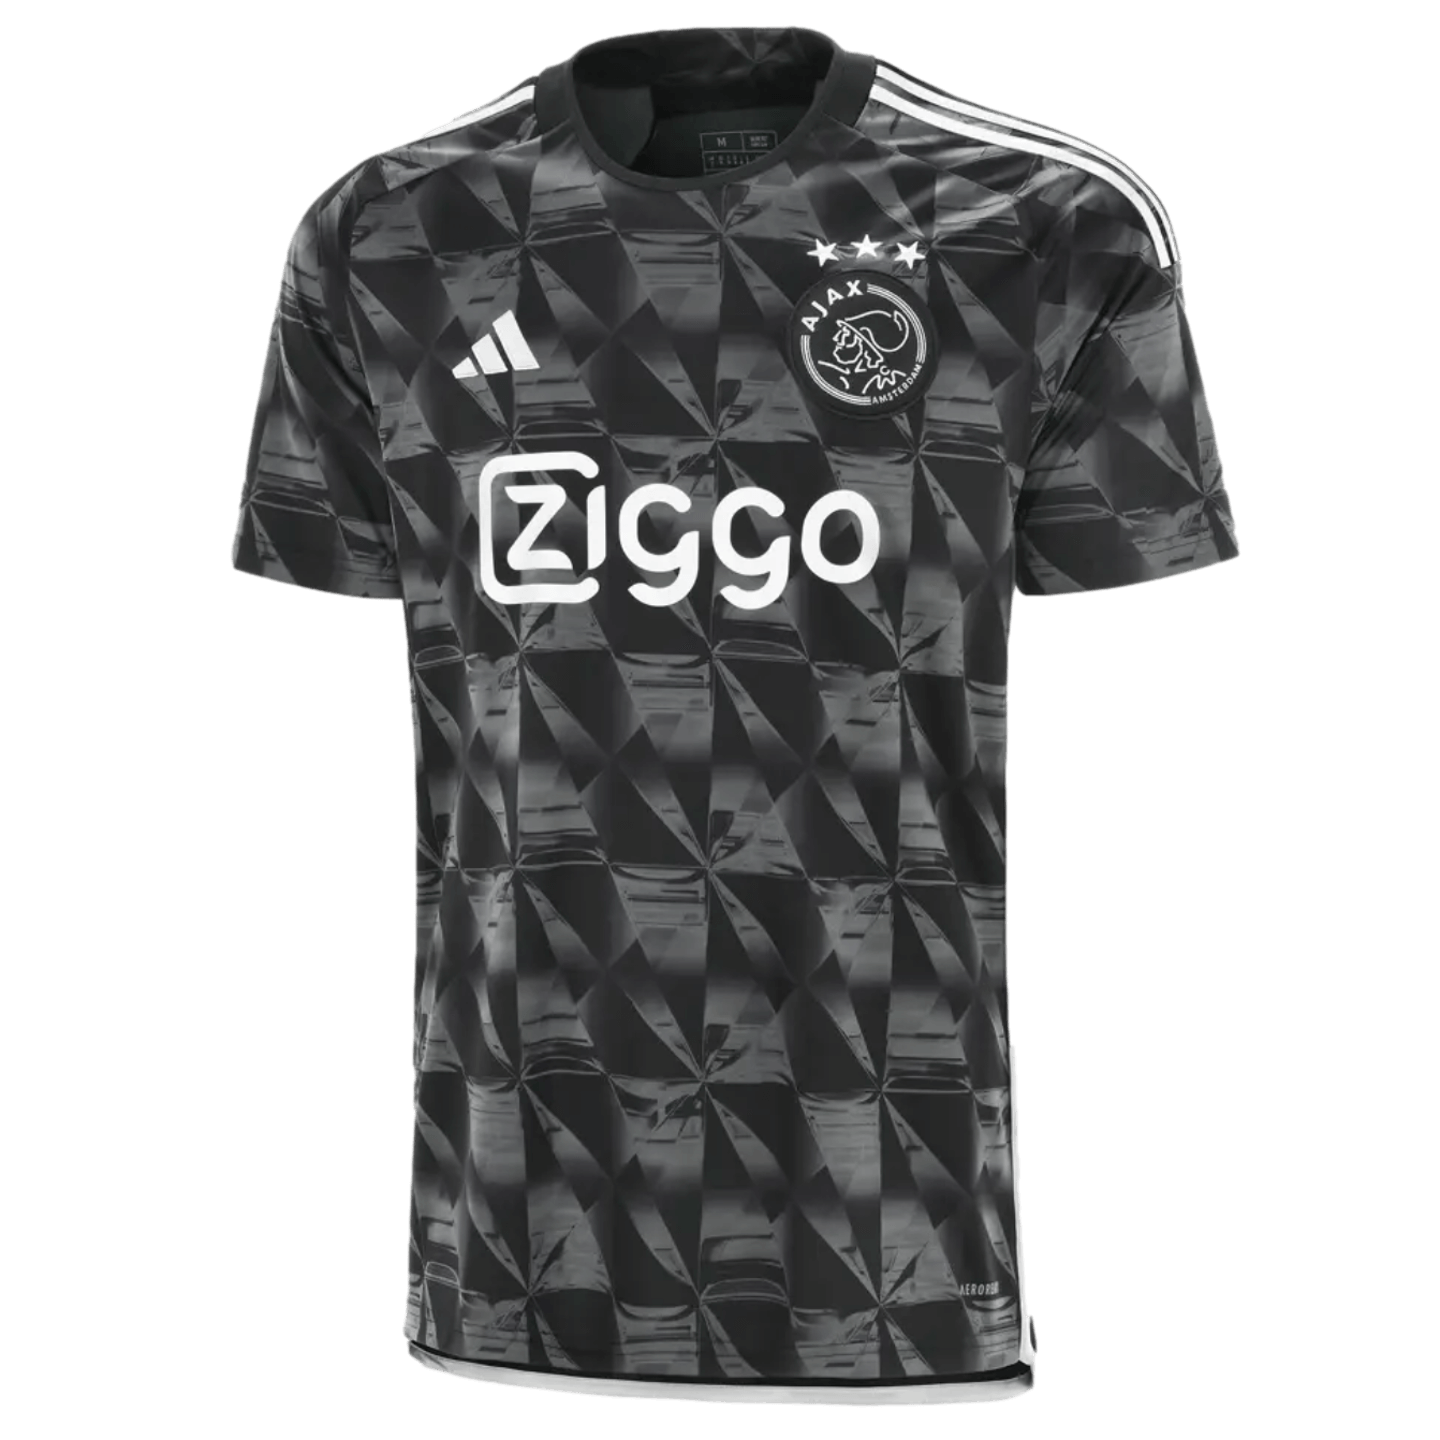 Adidas Ajax 23/24 Third Jersey